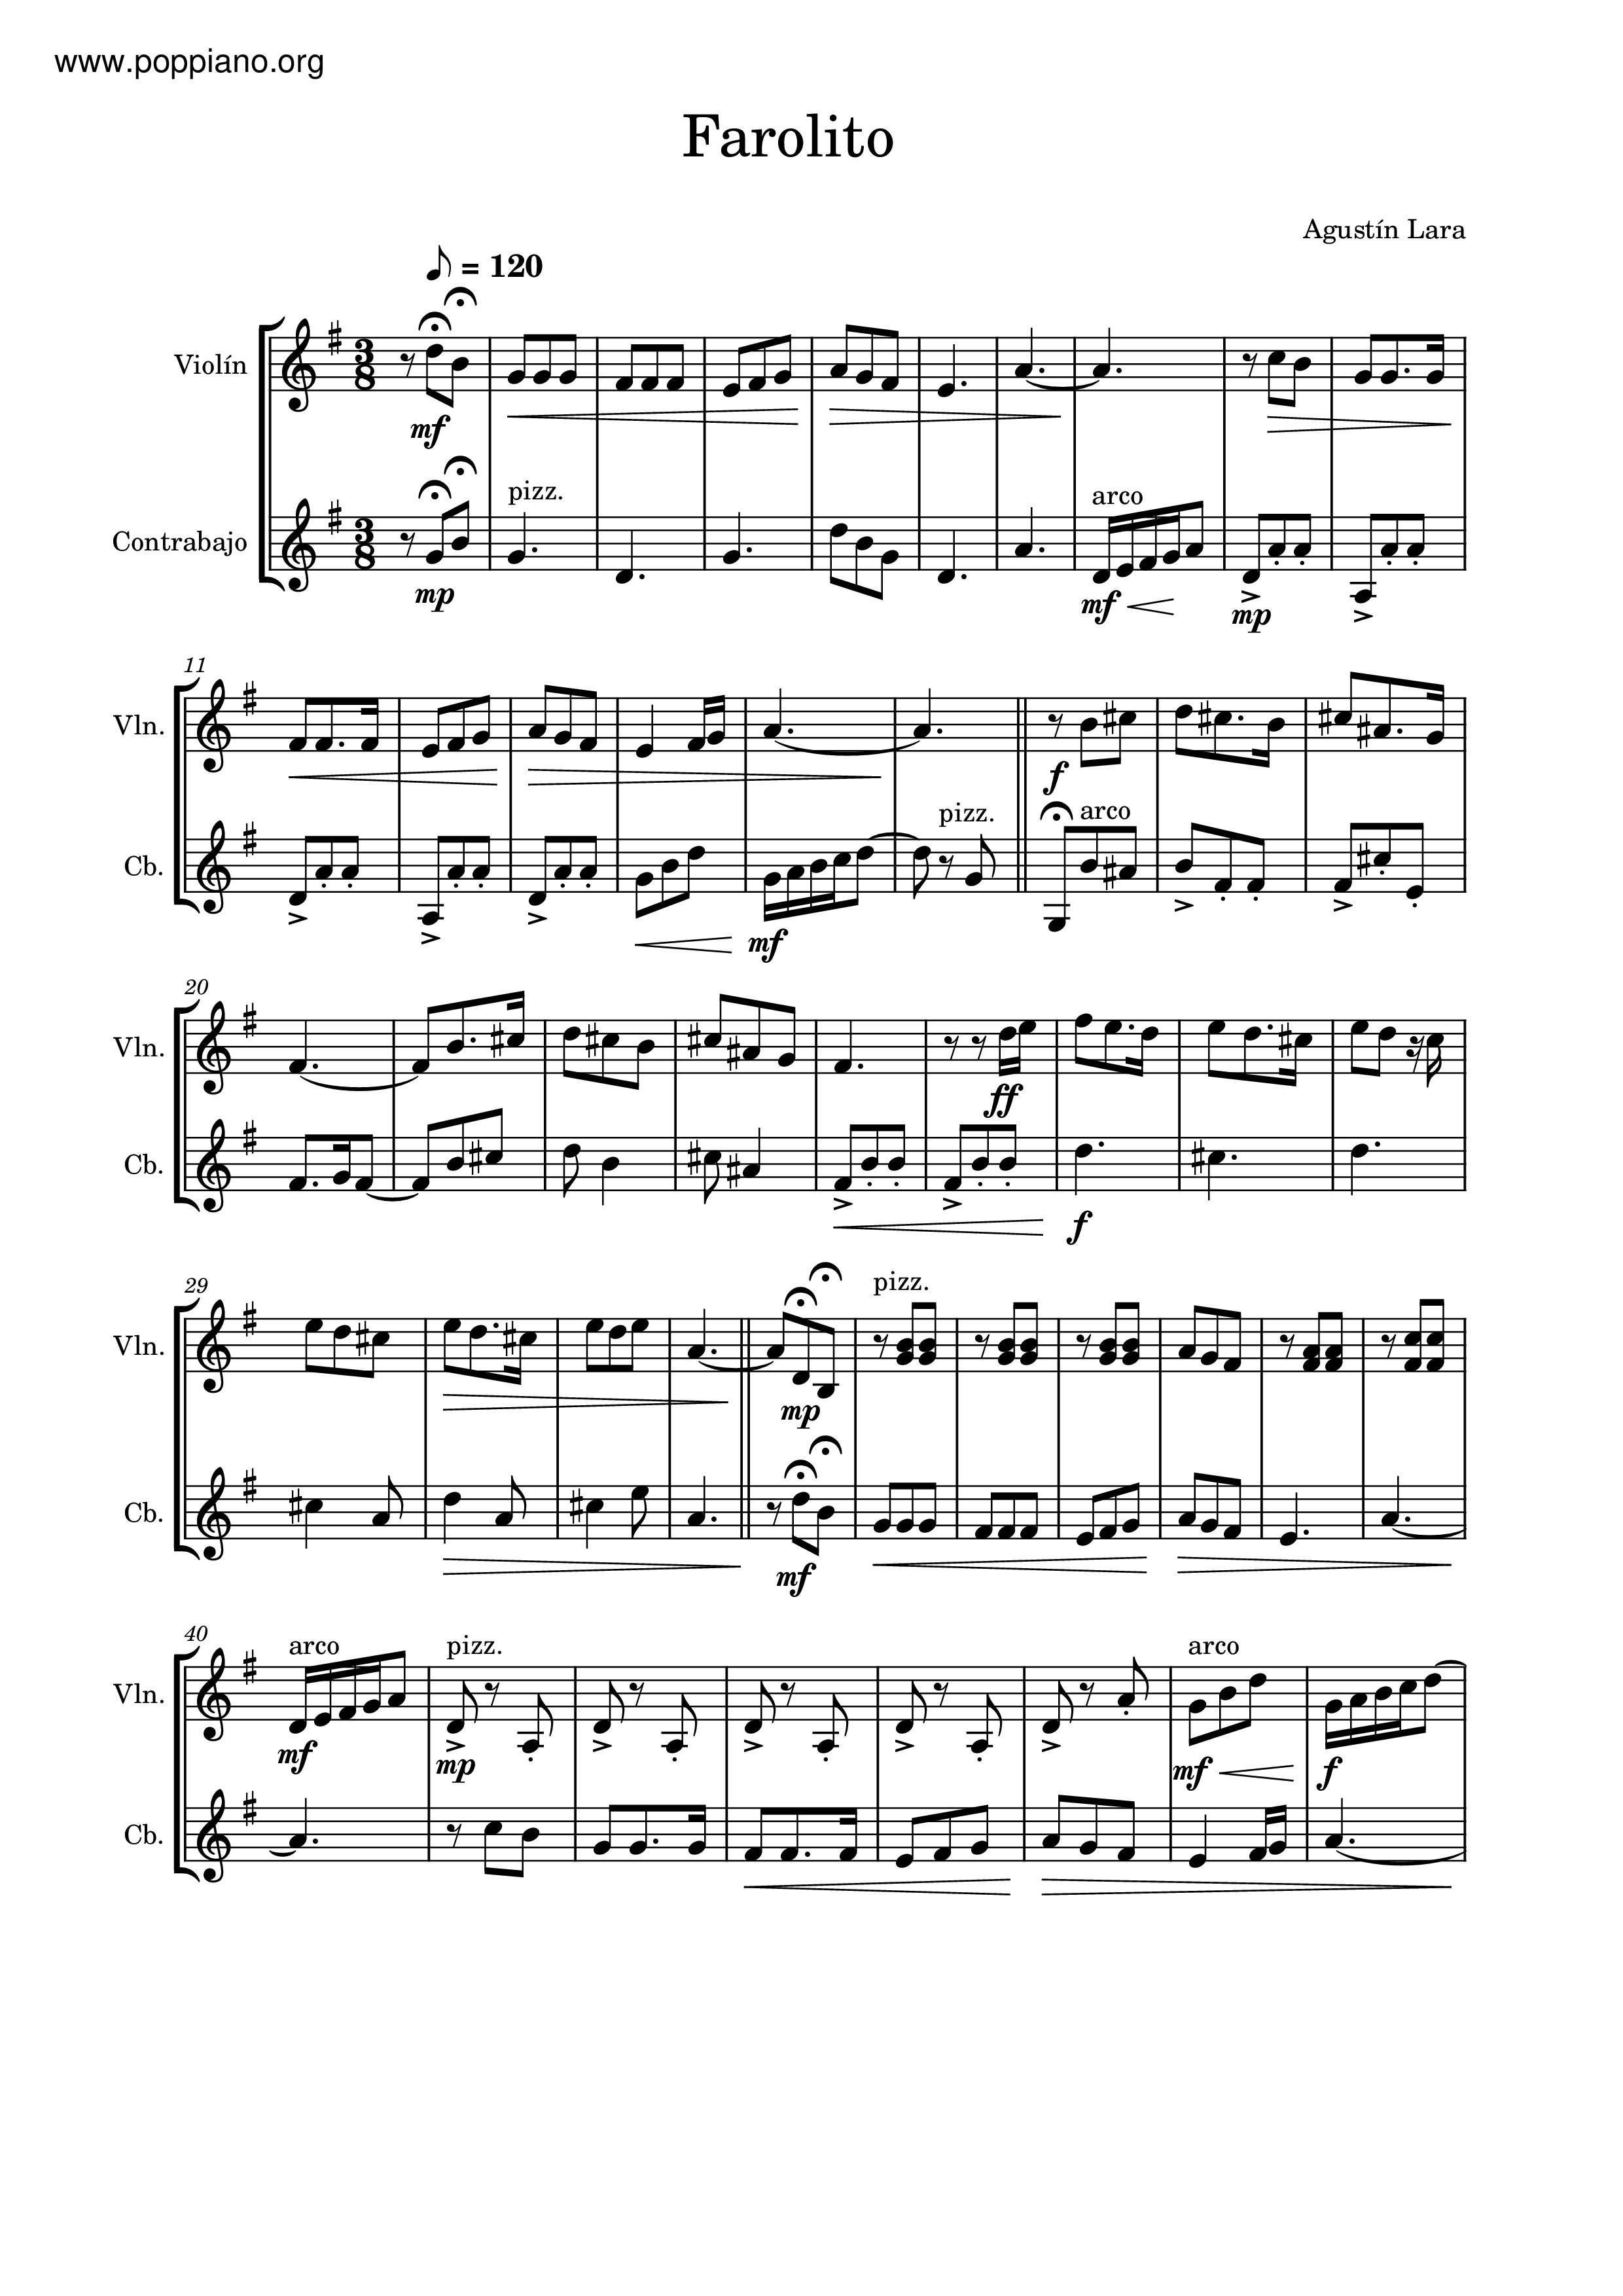 Farolito Score